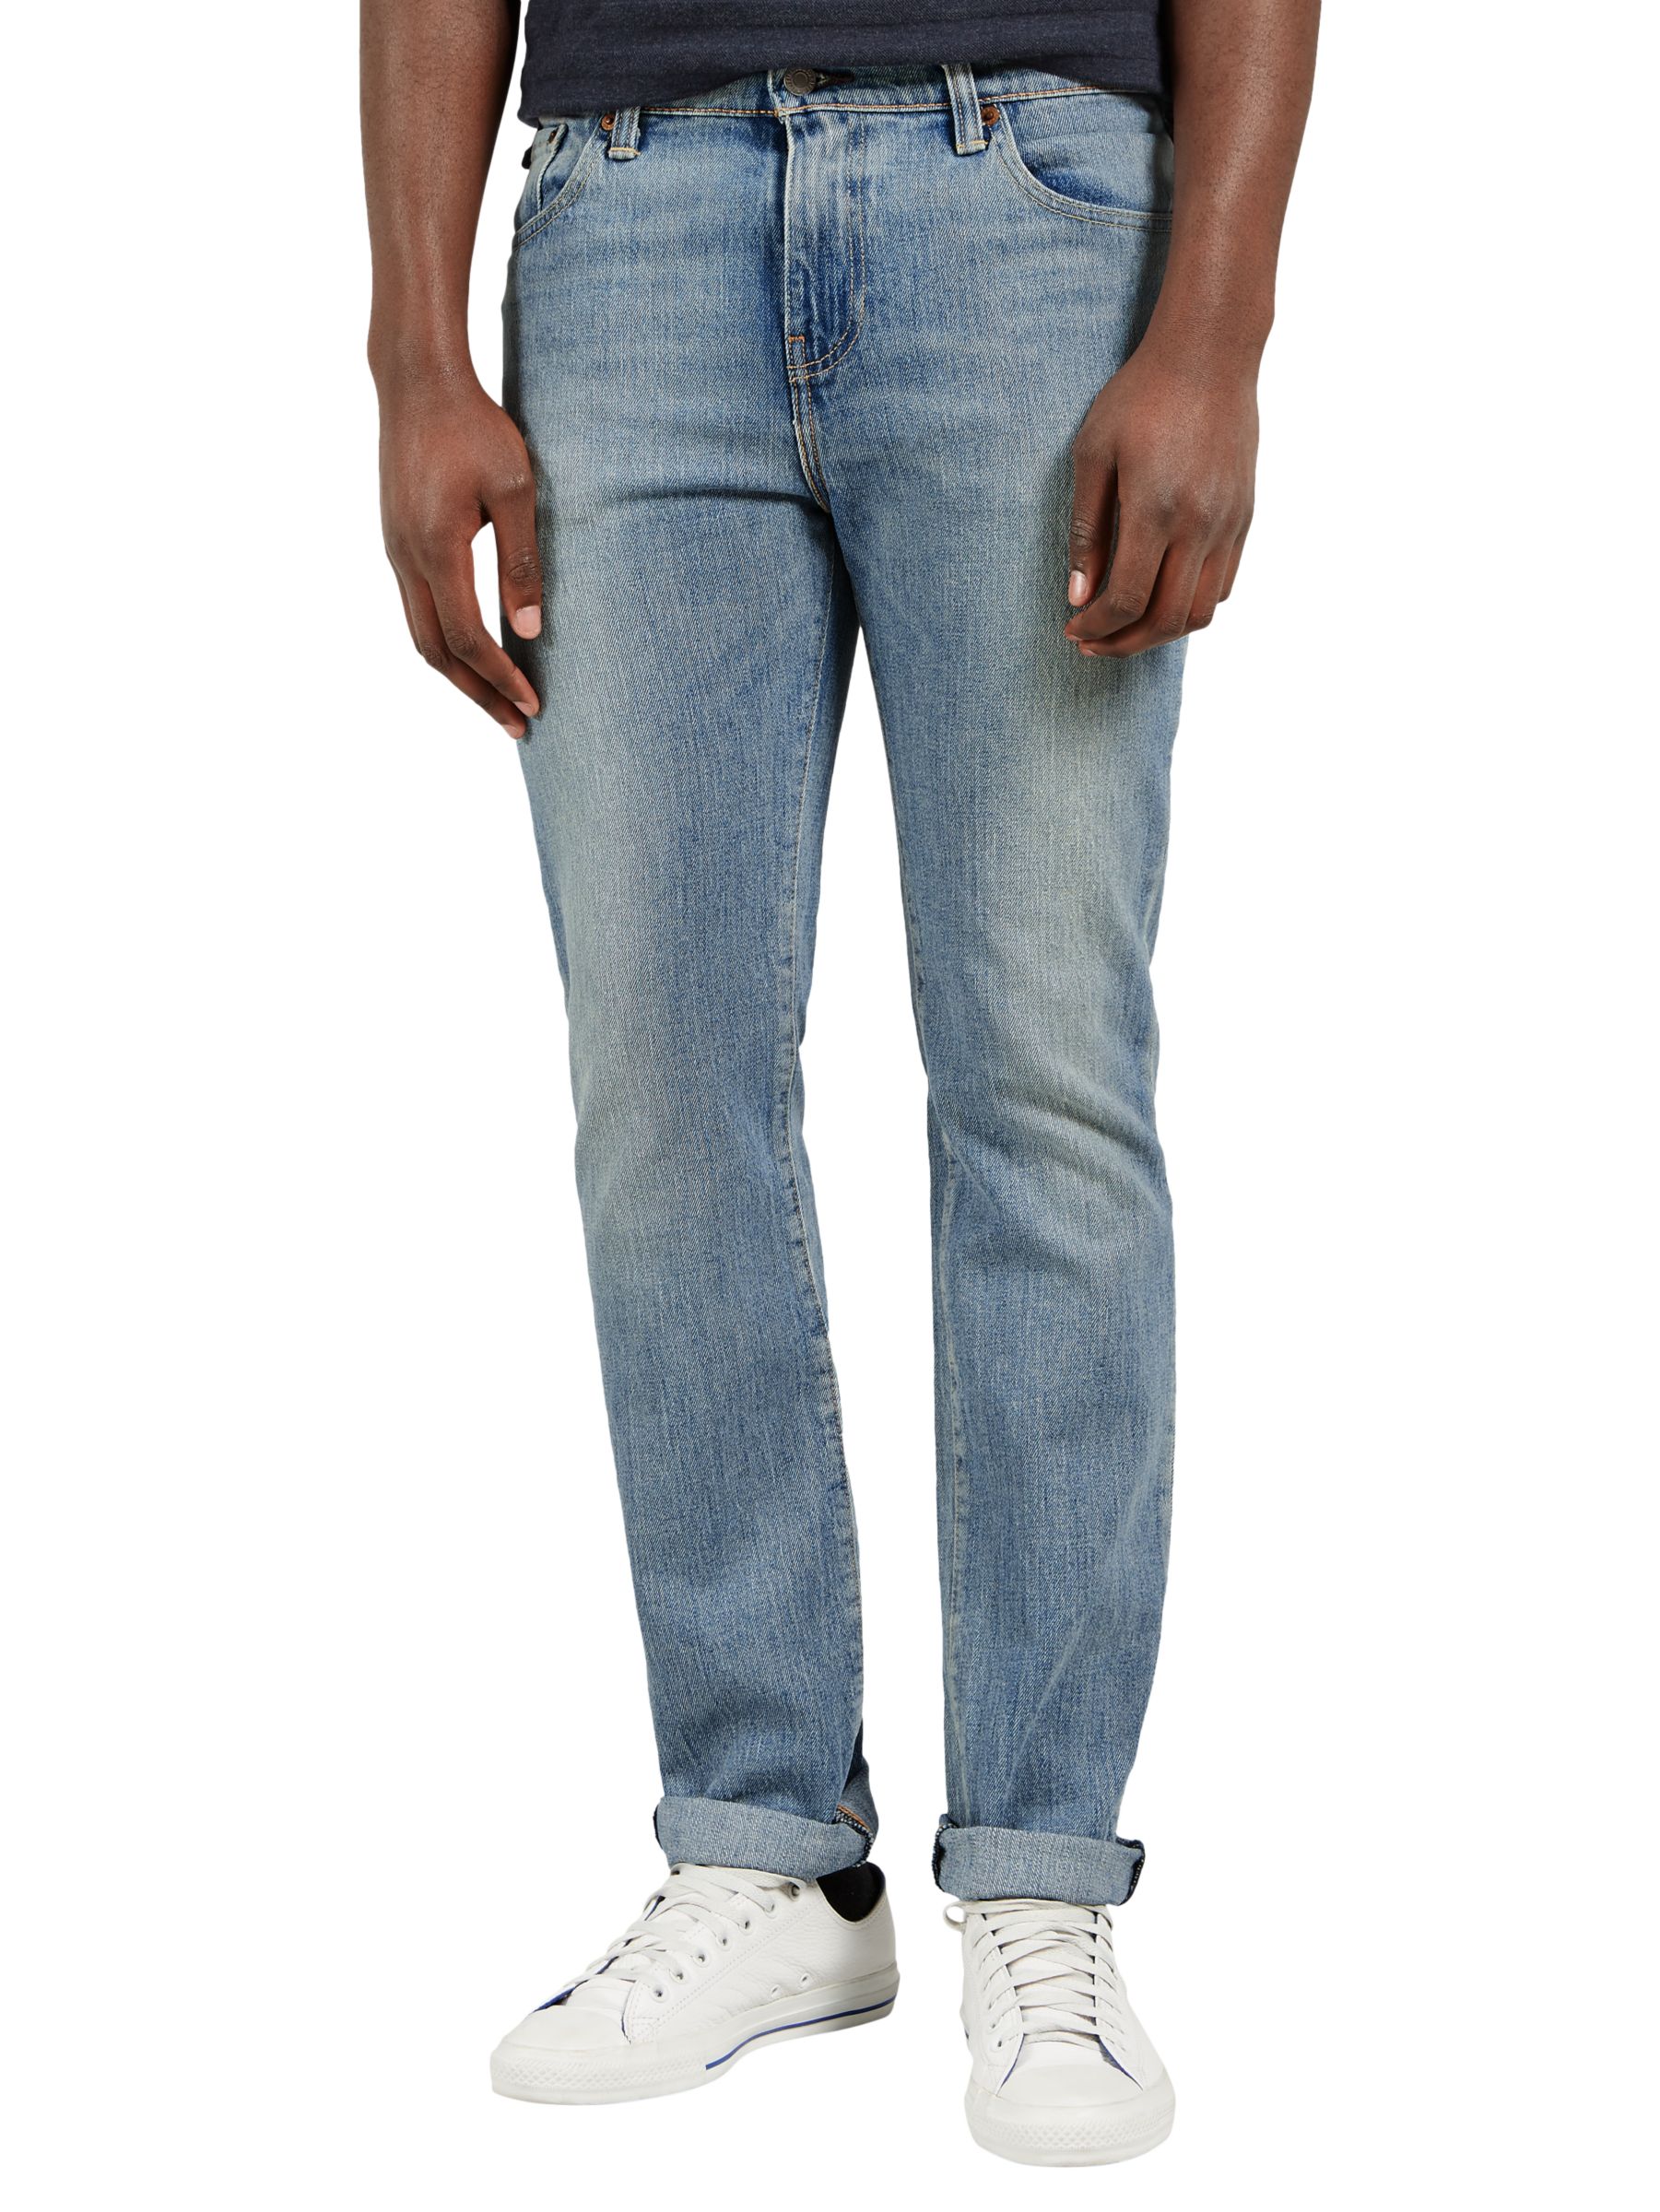 Levi's 511 Slim Fit Jeans, Light Wash 